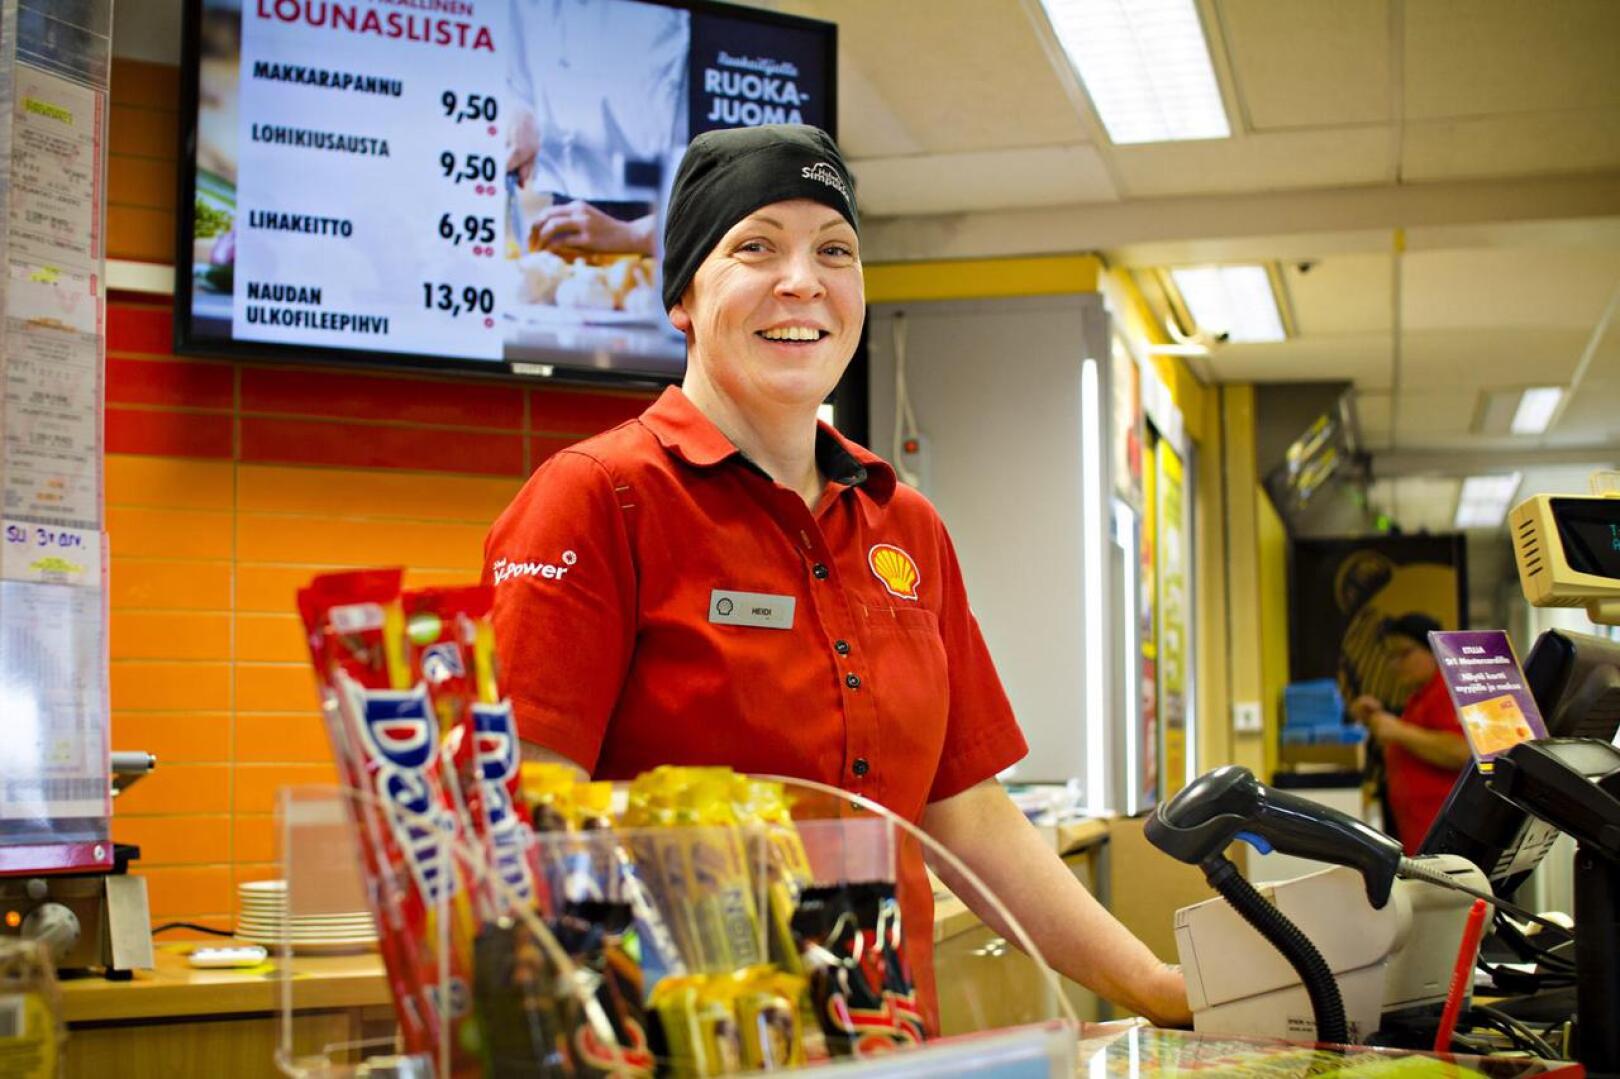 Heidi Kolppasen voi tavata Kalajoen Shellin tiskin takana. Ennen nykyistä työtään hän toimi ravintolapäällikkönä Vitsarin Shellillä Kokkolassa.